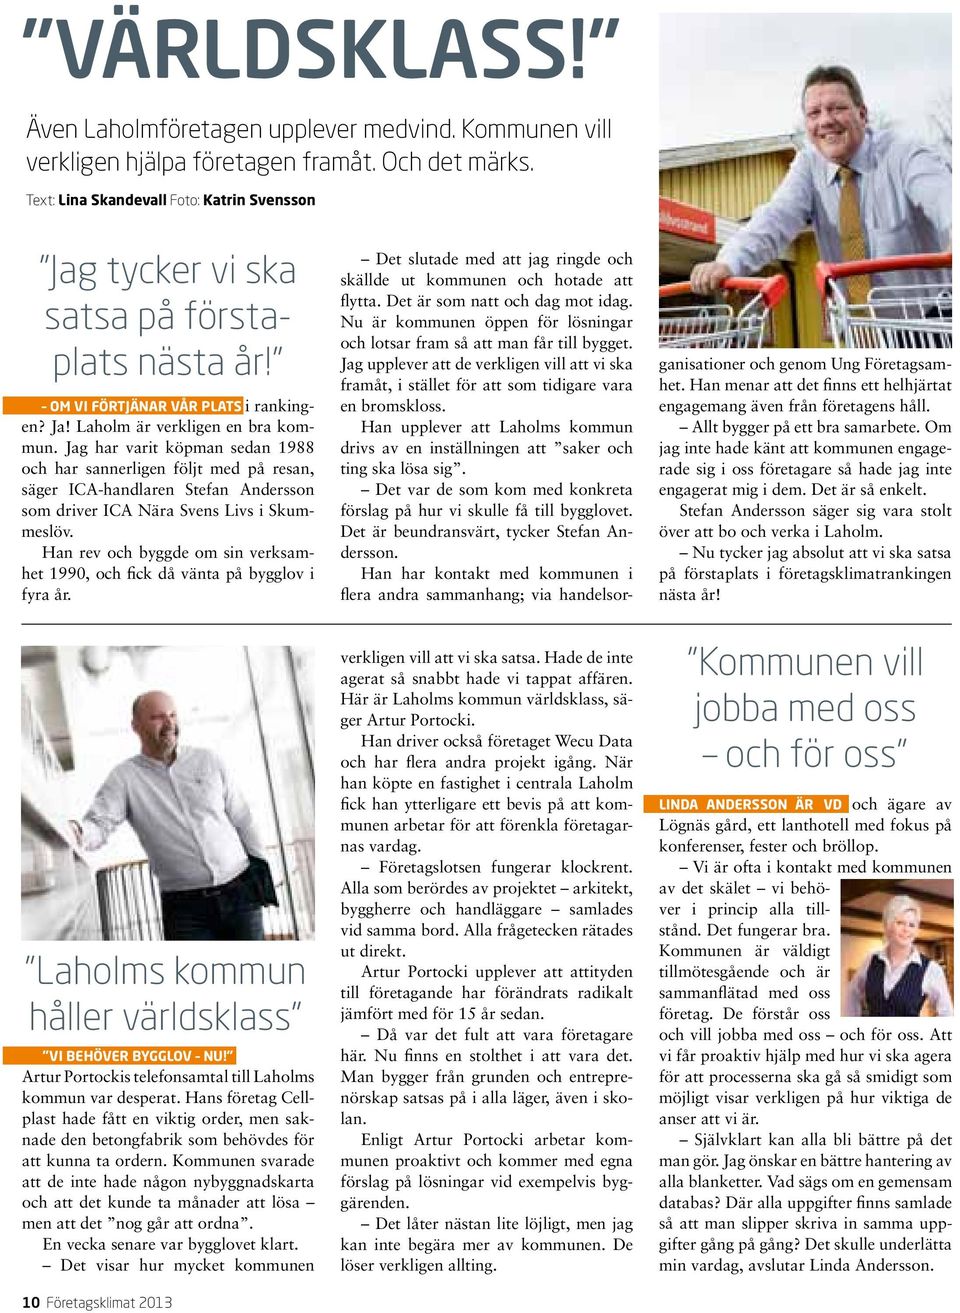 Jag har varit köpman sedan 1988 och har sannerligen följt med på resan, säger ICA-handlaren Stefan Andersson som driver ICA Nära Svens Livs i Skummeslöv.